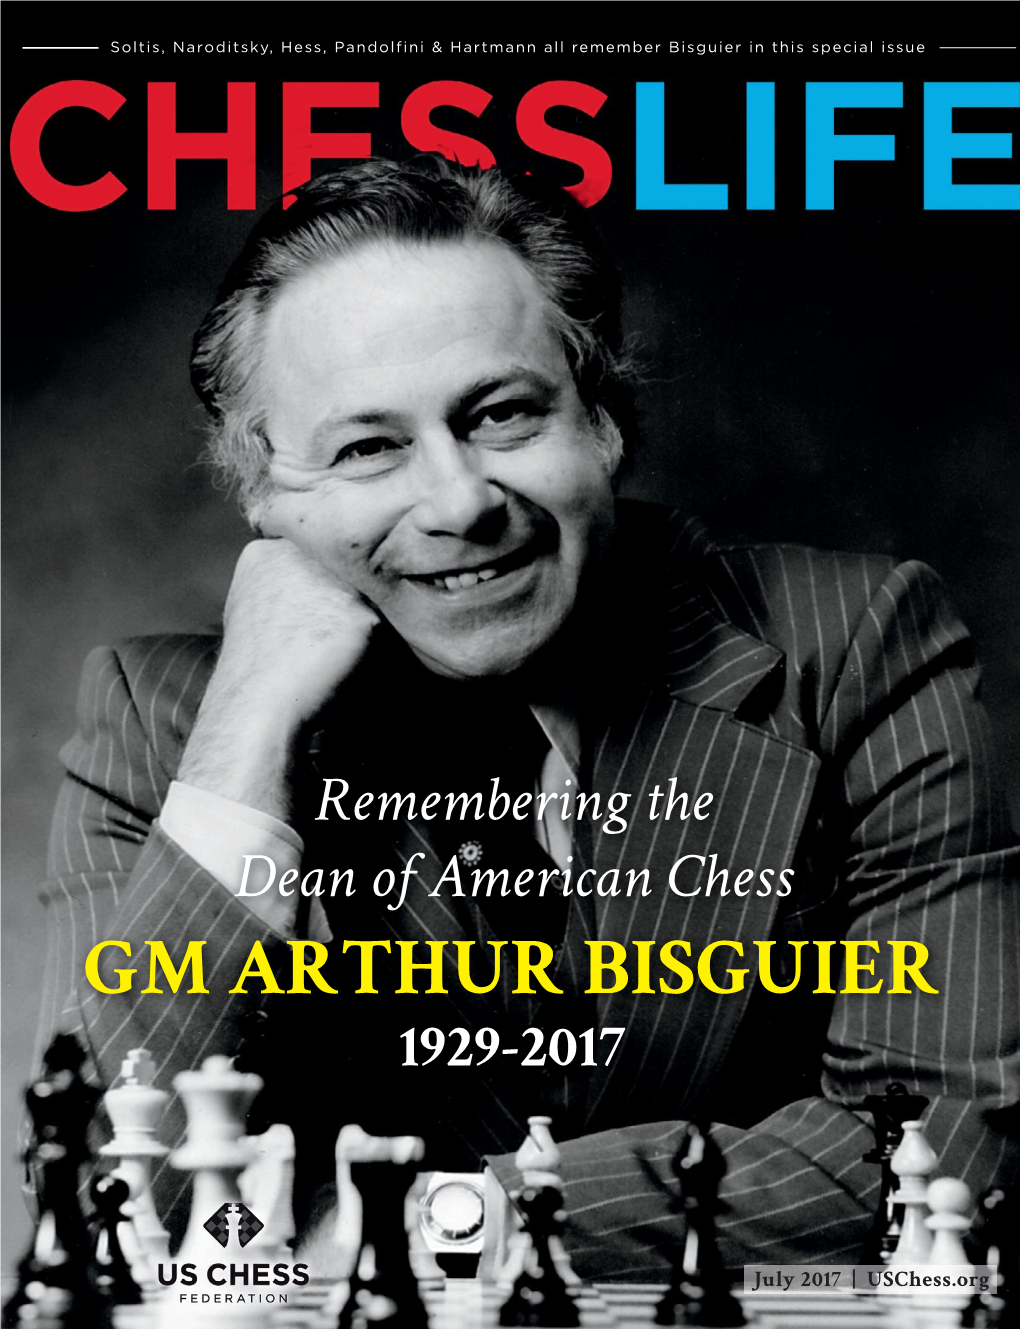 Gm Arthur Bisguier 1929-2017